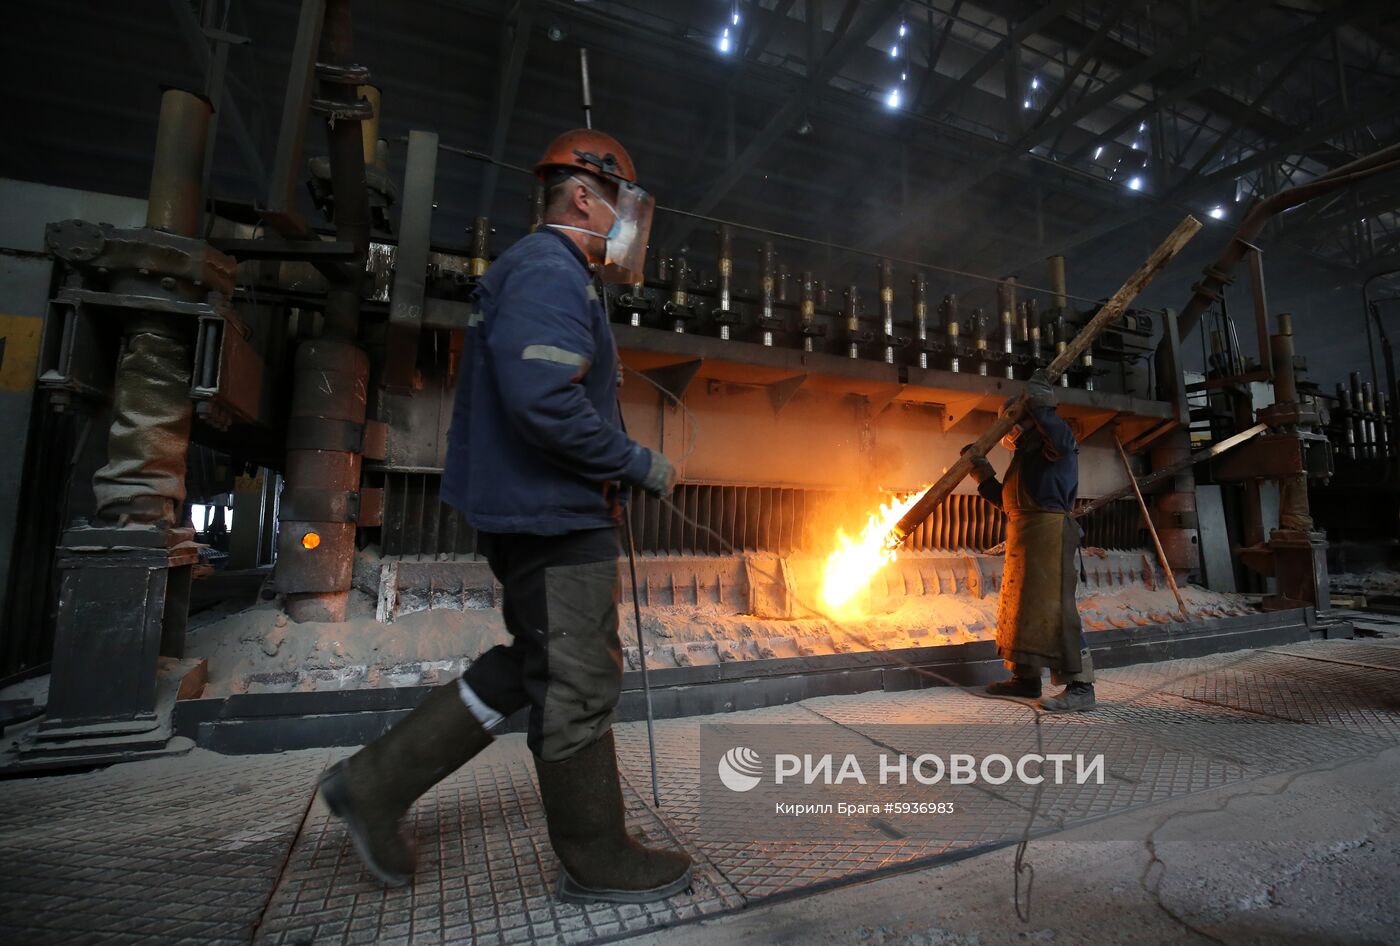 Волгоградский алюминиевый завод